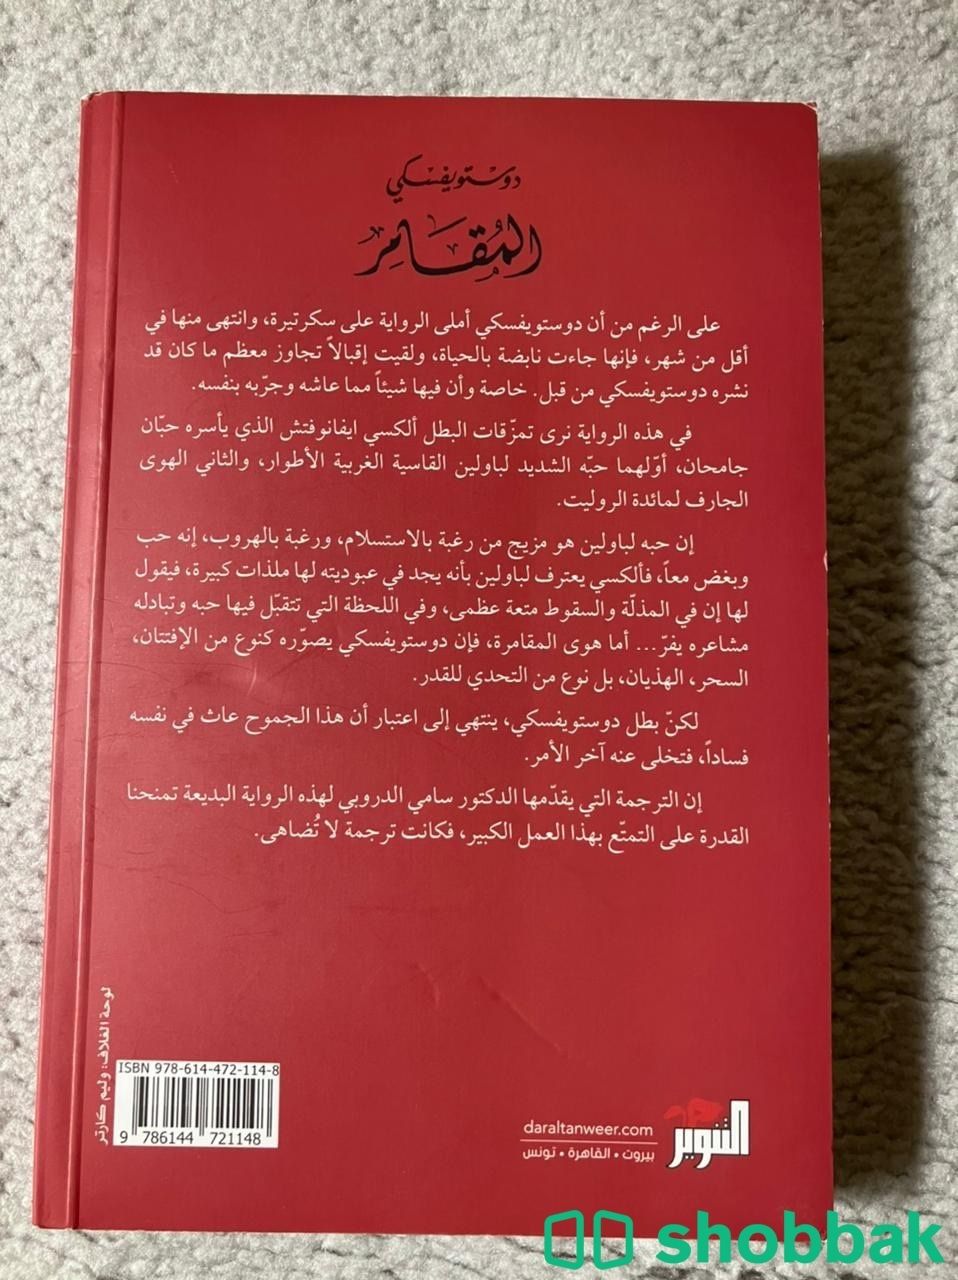 كتاب دستيوفيسكي ذكريات في منزل الاموات ، المقامر شباك السعودية